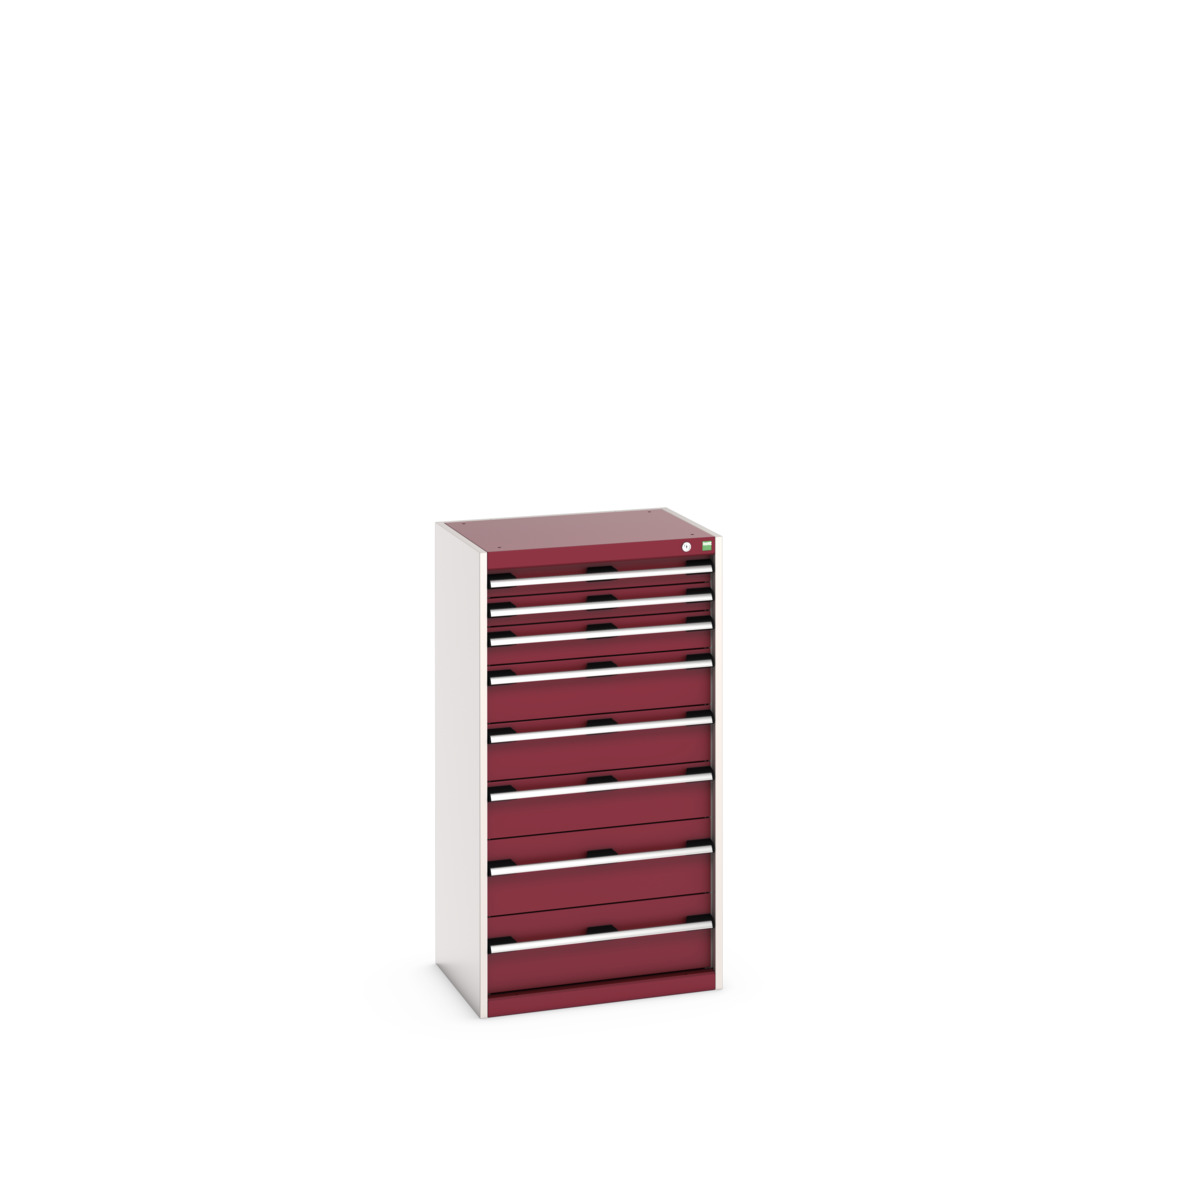 40011064.24V - cubio drawer cabinet